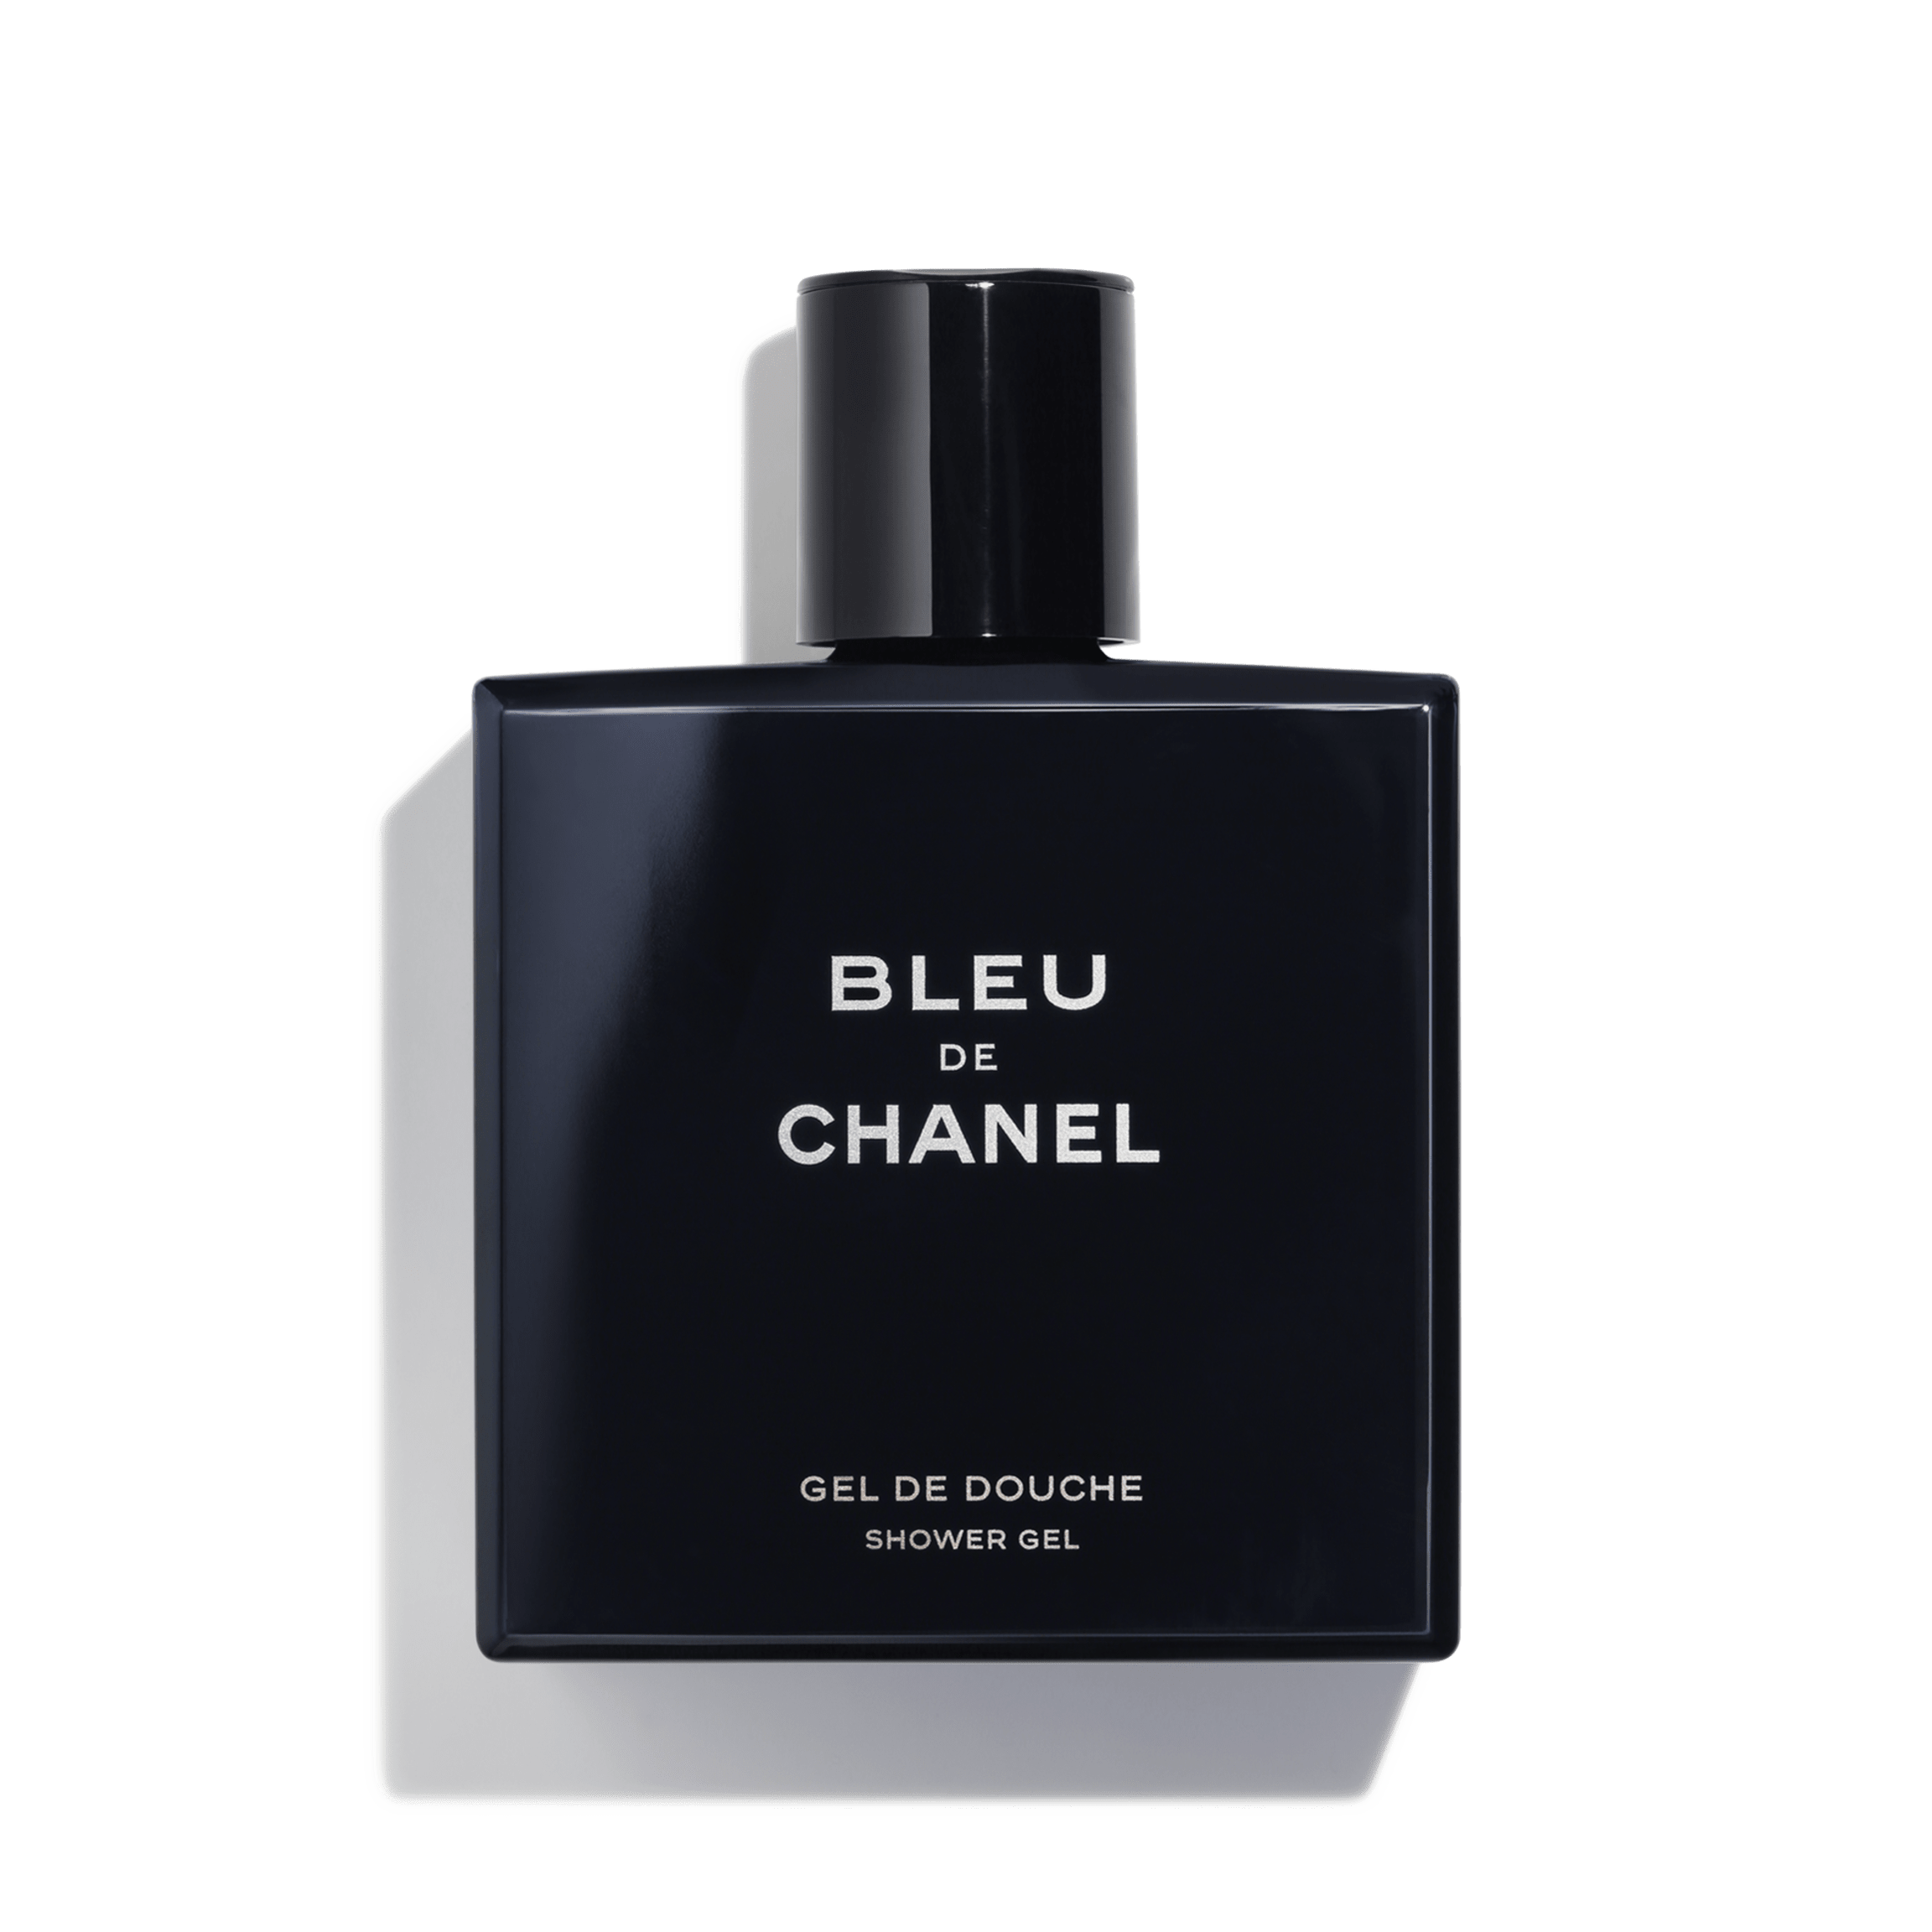 bleu-de-chanel-shower-gel-6-8fl-oz--packshot-default-107960-8823574036510